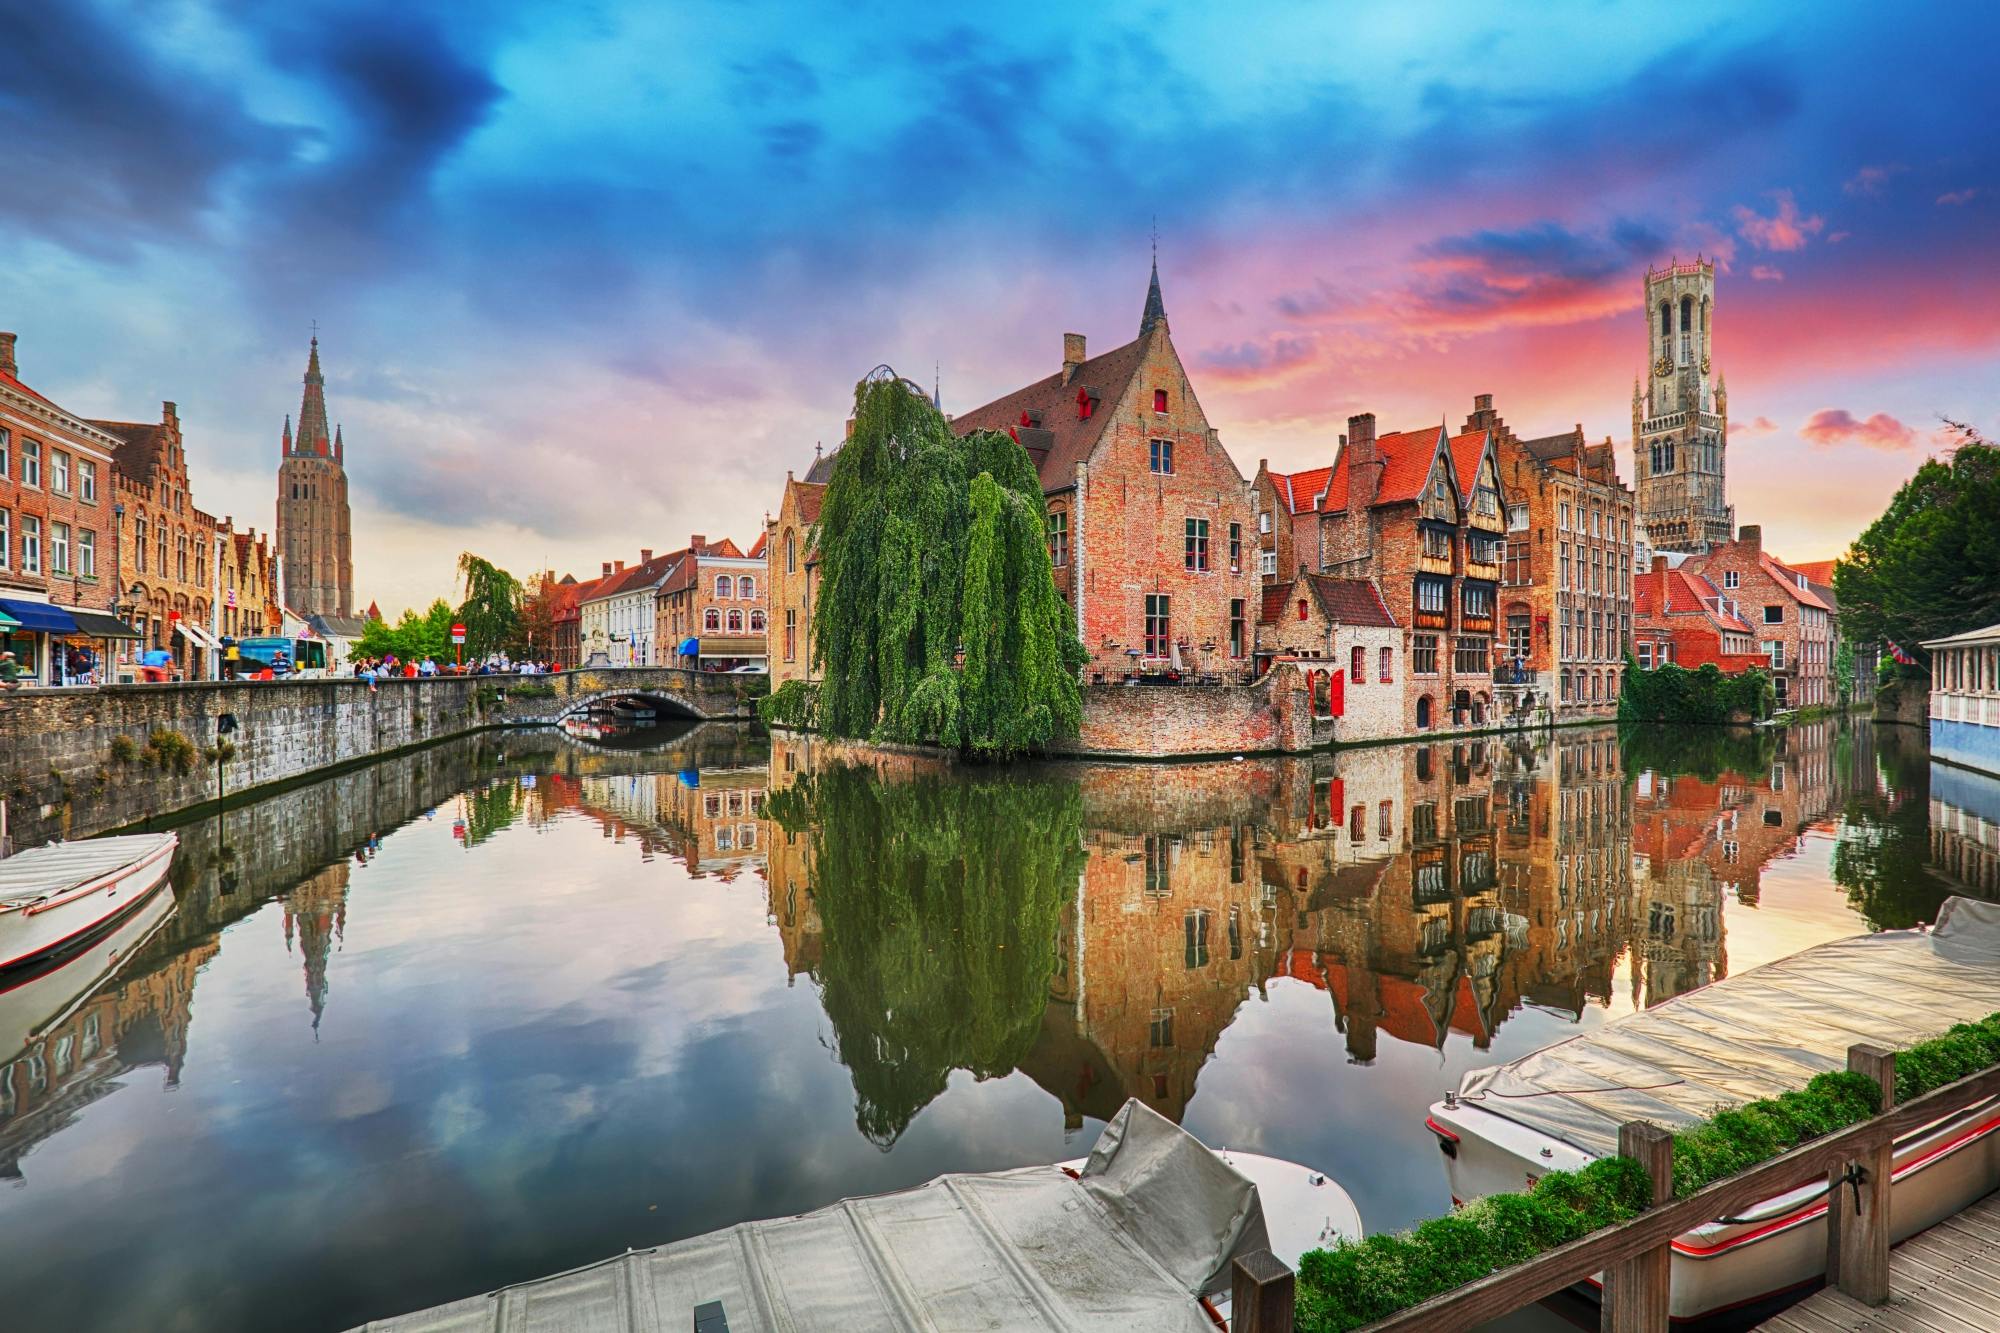 Bezoek de hoogtepunten van Brugge in een app voor stadsverkenning